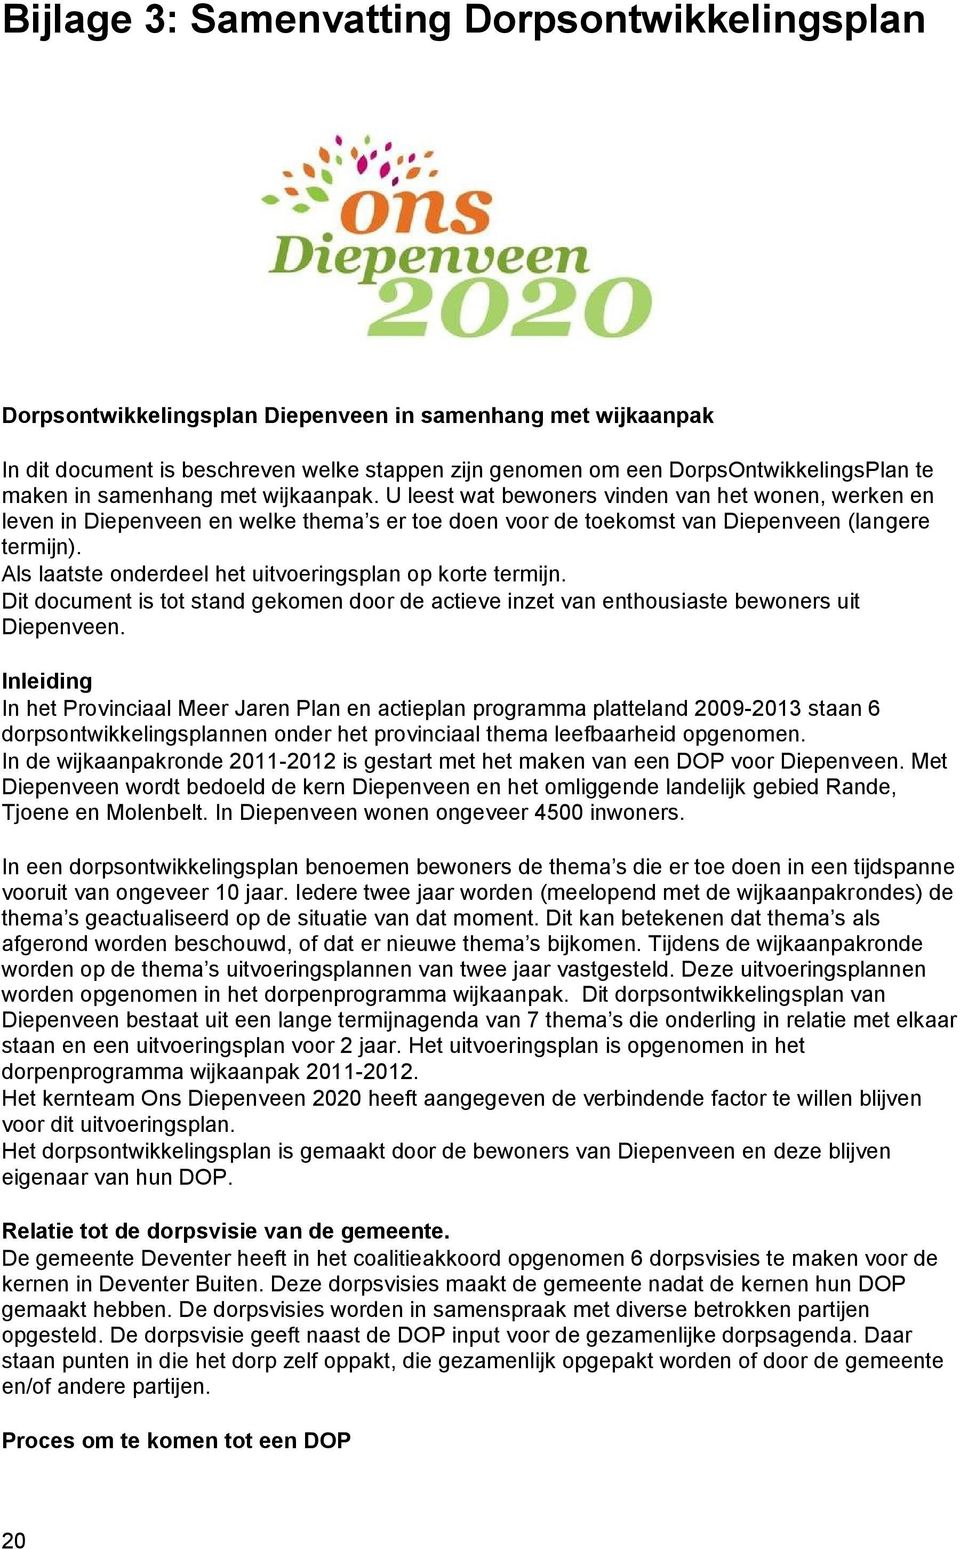 Als laatste onderdeel het uitvoeringsplan op korte termijn. Dit document is tot stand gekomen door de actieve inzet van enthousiaste bewoners uit Diepenveen.